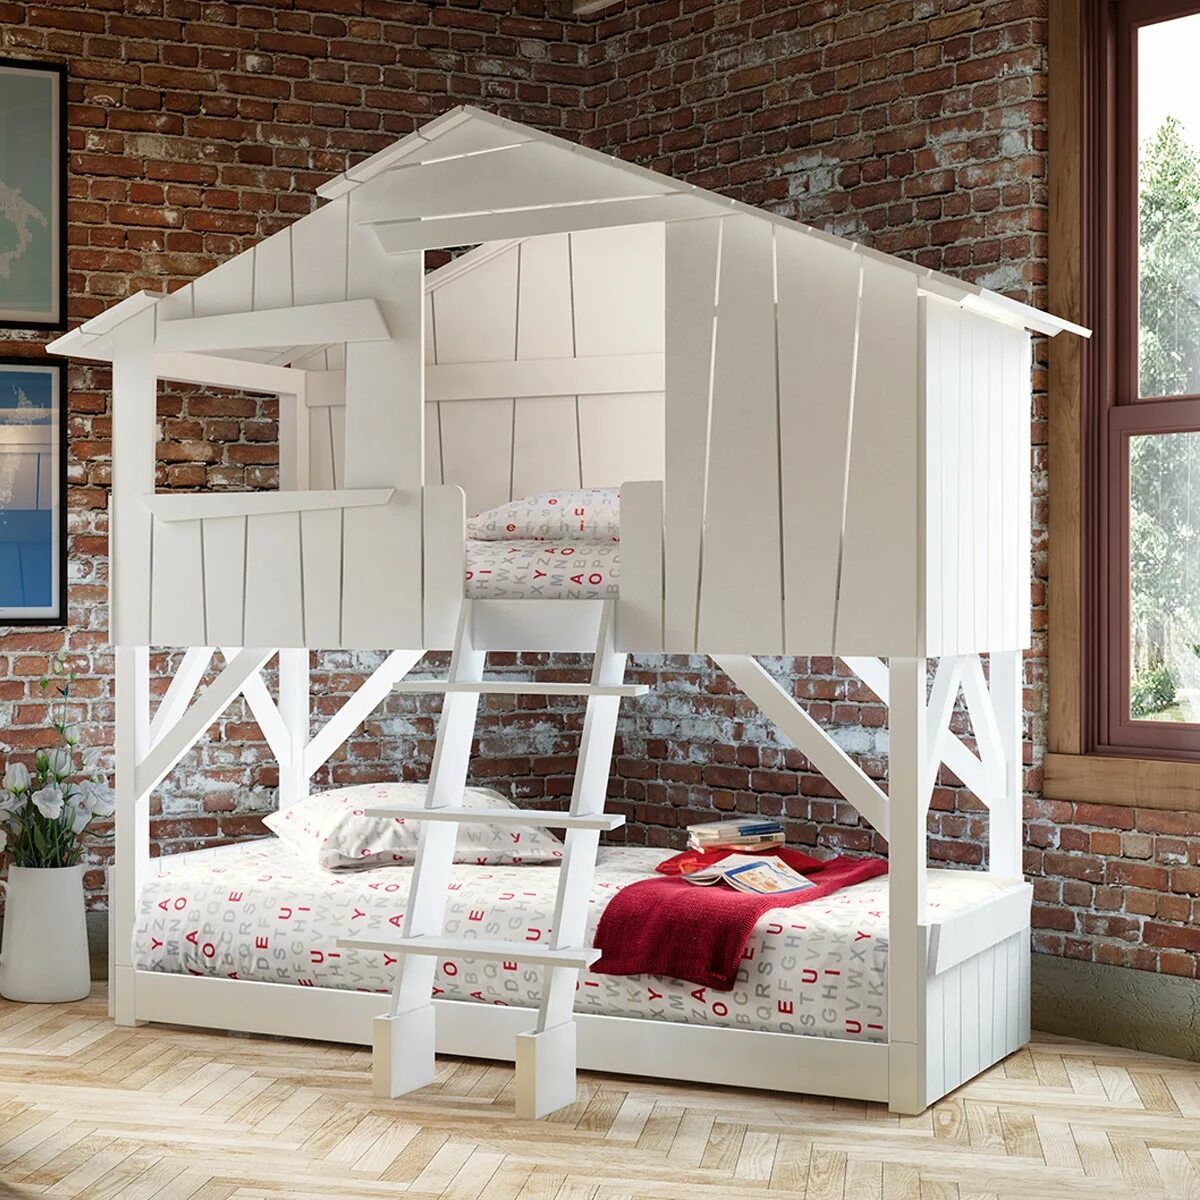 Кровать дом взрослая. Кровать домик (90 х 180). Кровать хофф двухъярусная деревянная. Кровать.домик Бильбао СЛК 2-ярусная. Кровать домик двухъярусная MDW Kids.